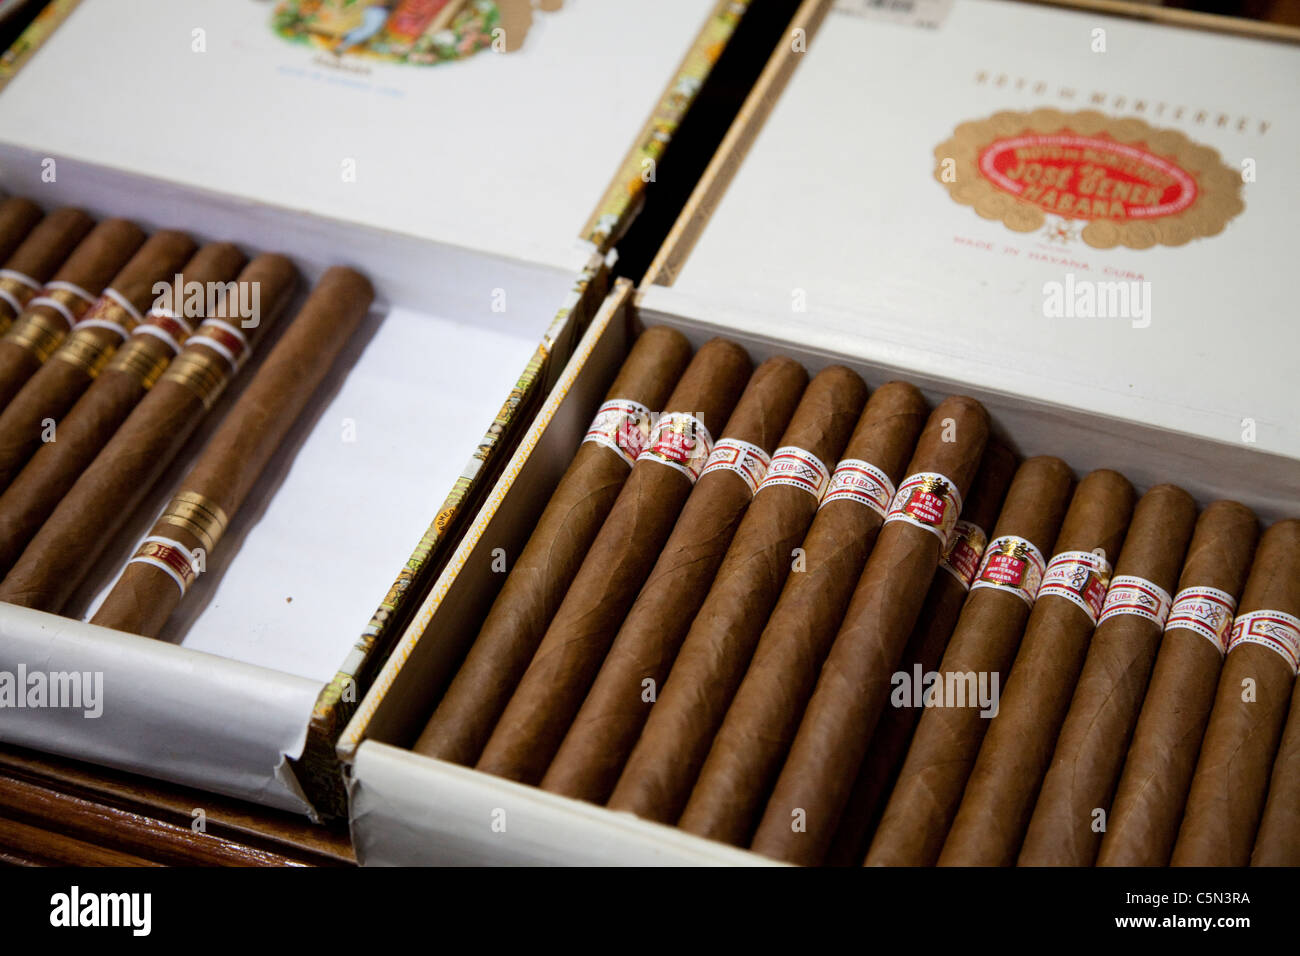 I Sigari Cubani, Fatti a Mano Fotografia Stock - Immagine di lusso,  tabacco: 62583922